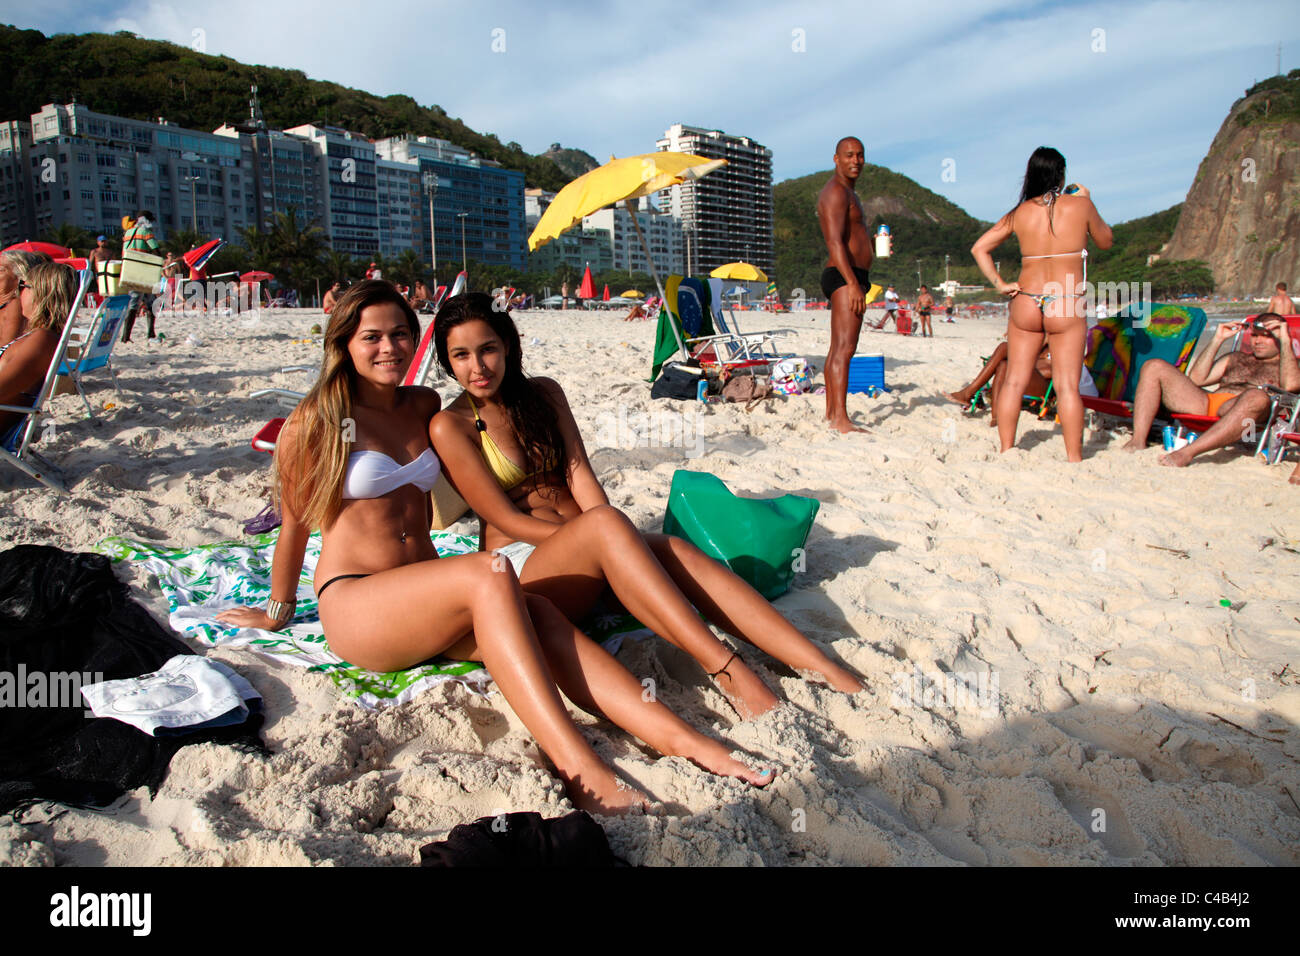 The famous Copacabana Beach in Rio de Janeiro. Brazil Stock Photo